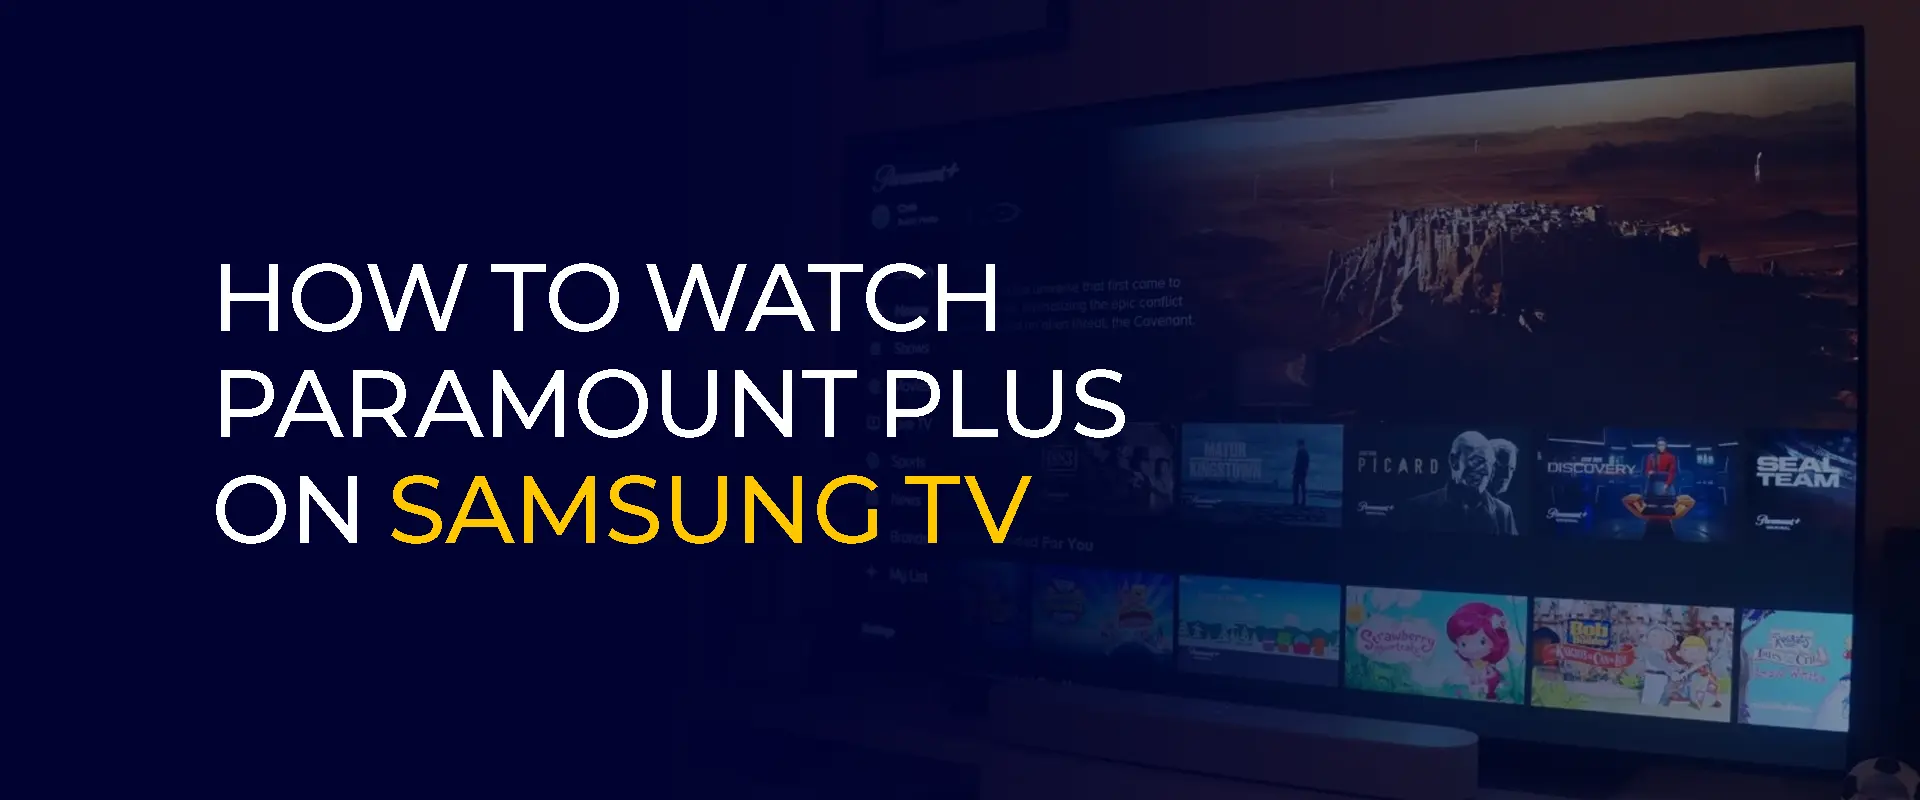 Samsung TV で Paramount Plus を視聴する方法